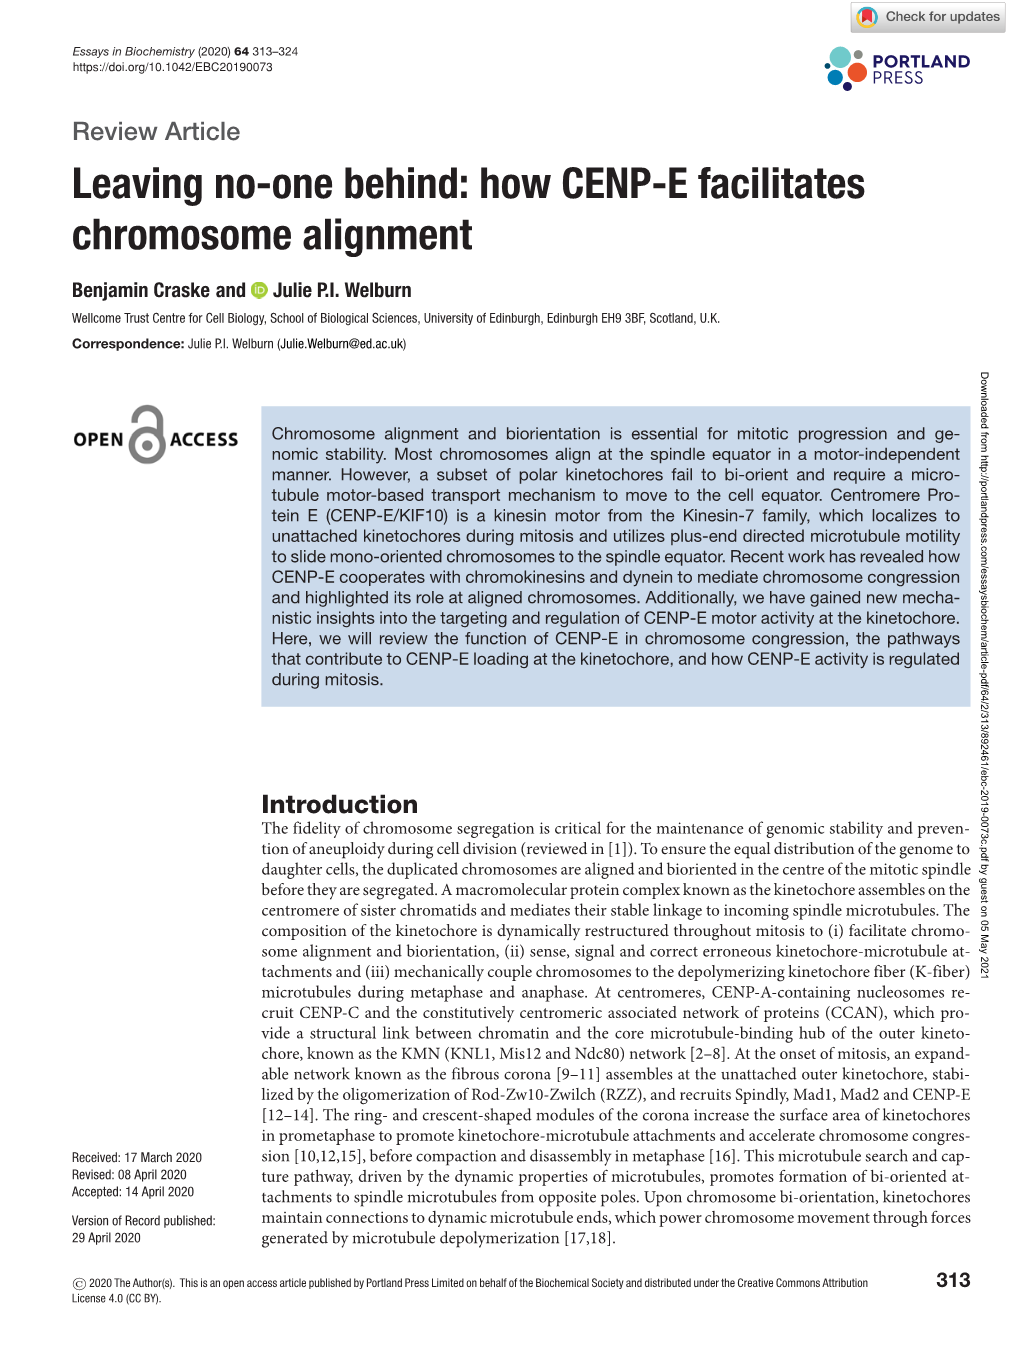 Leaving No-One Behind: How CENP-E Facilitates Chromosome Alignment